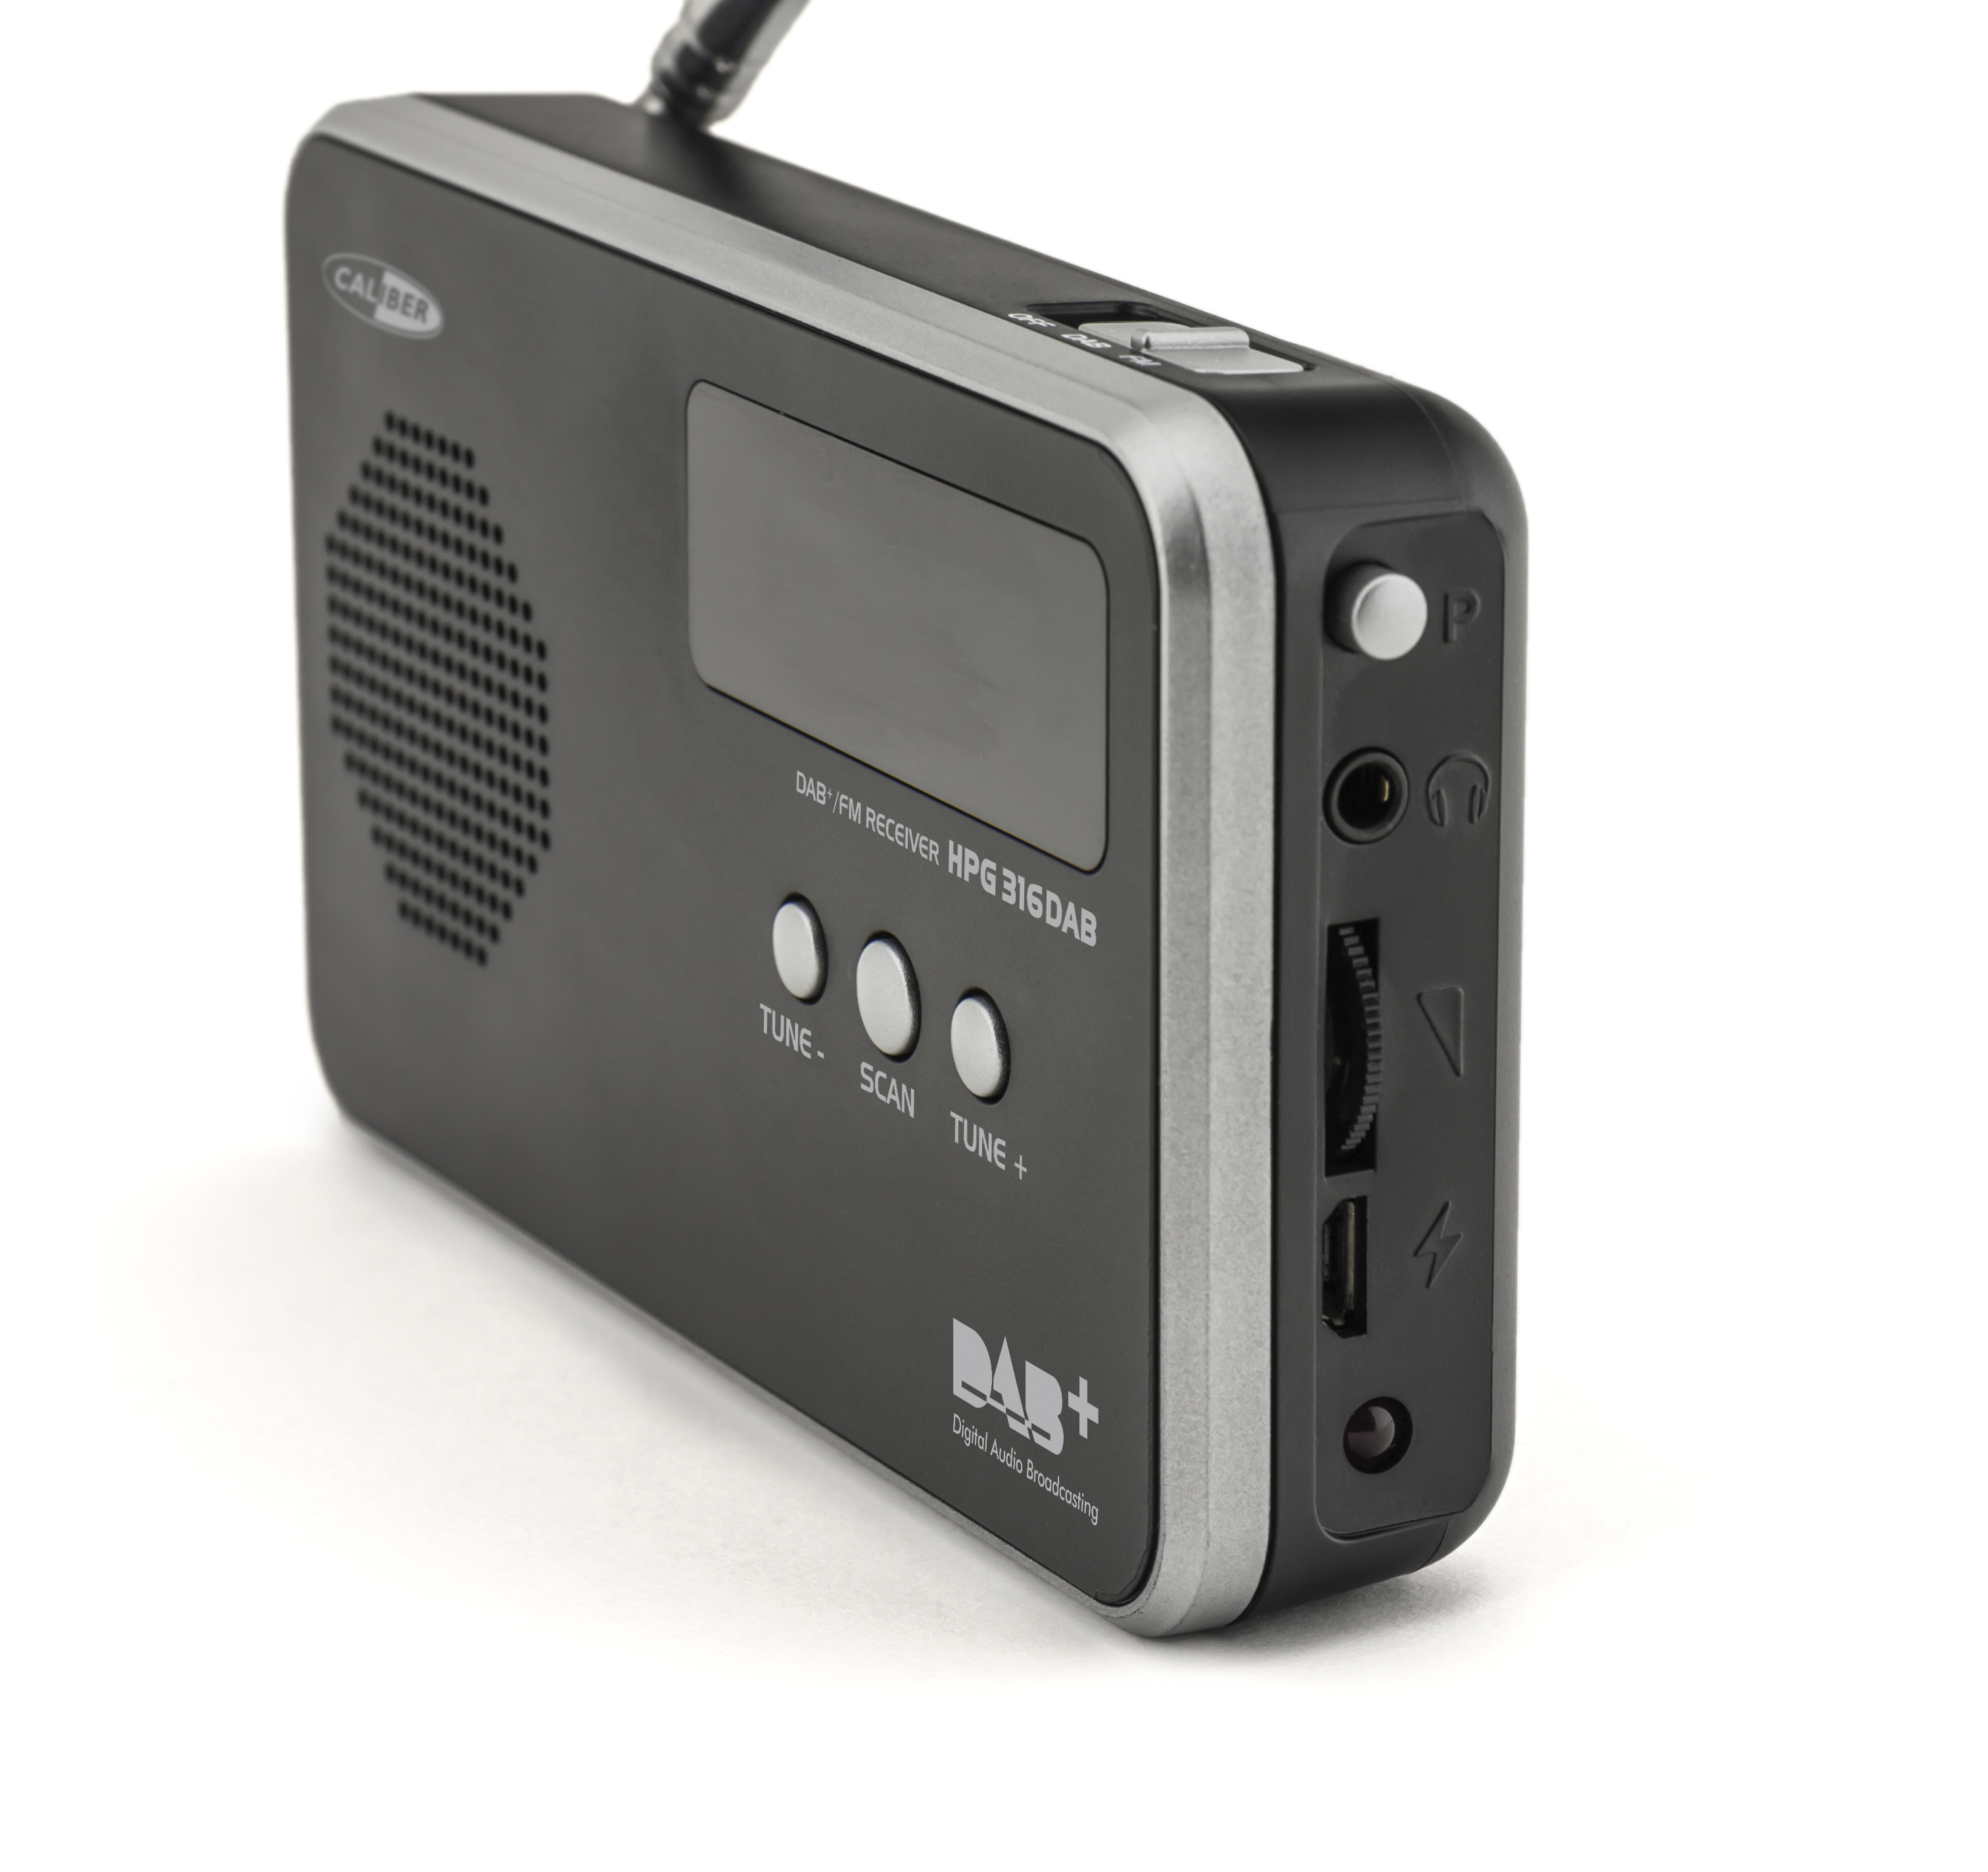 FM, Radio, portable HPG316DAB/B DAB+ Schwarz CALIBER DAB+,